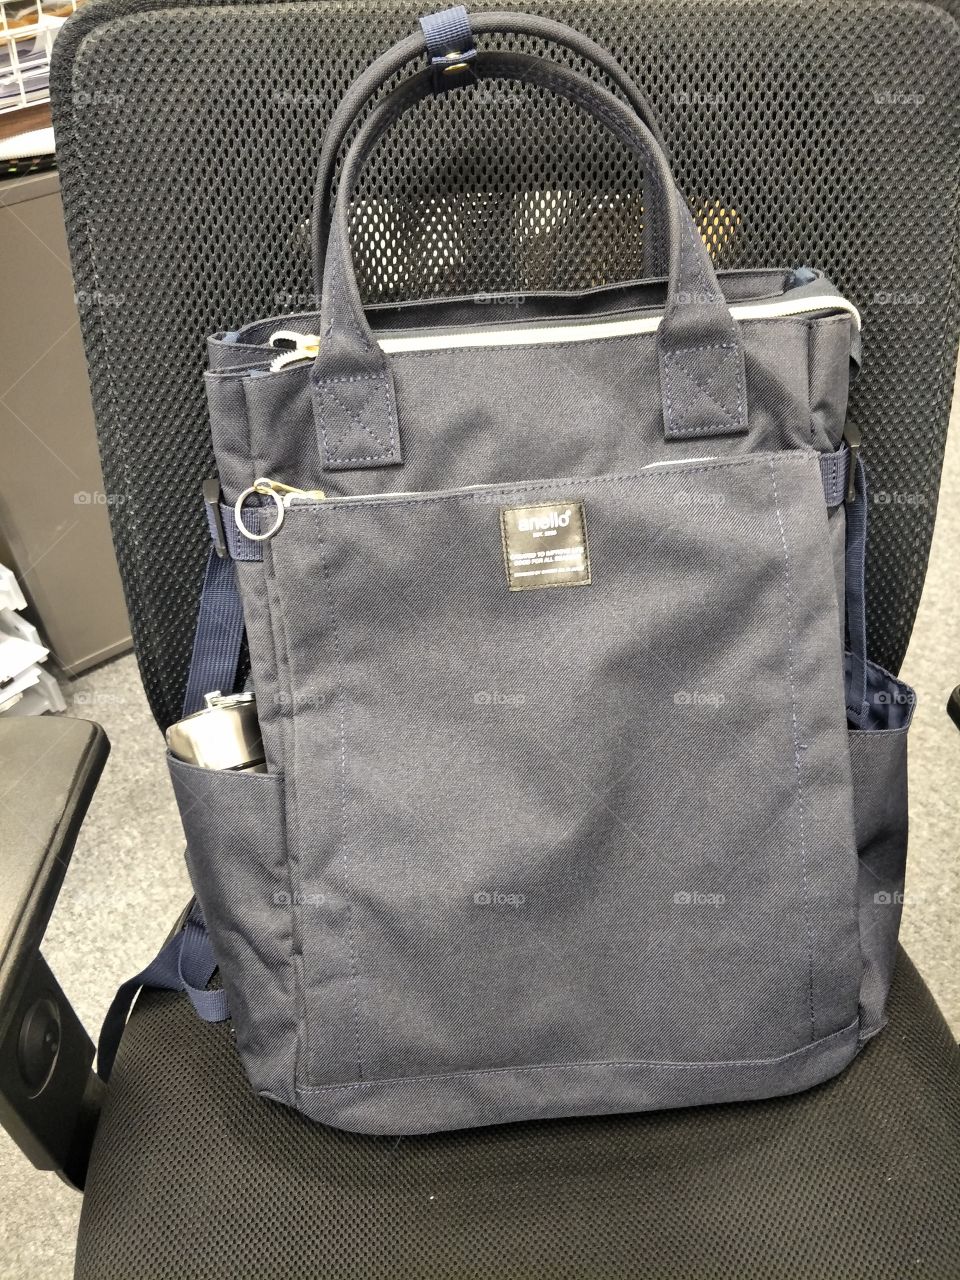 Backpack, shoulder bag